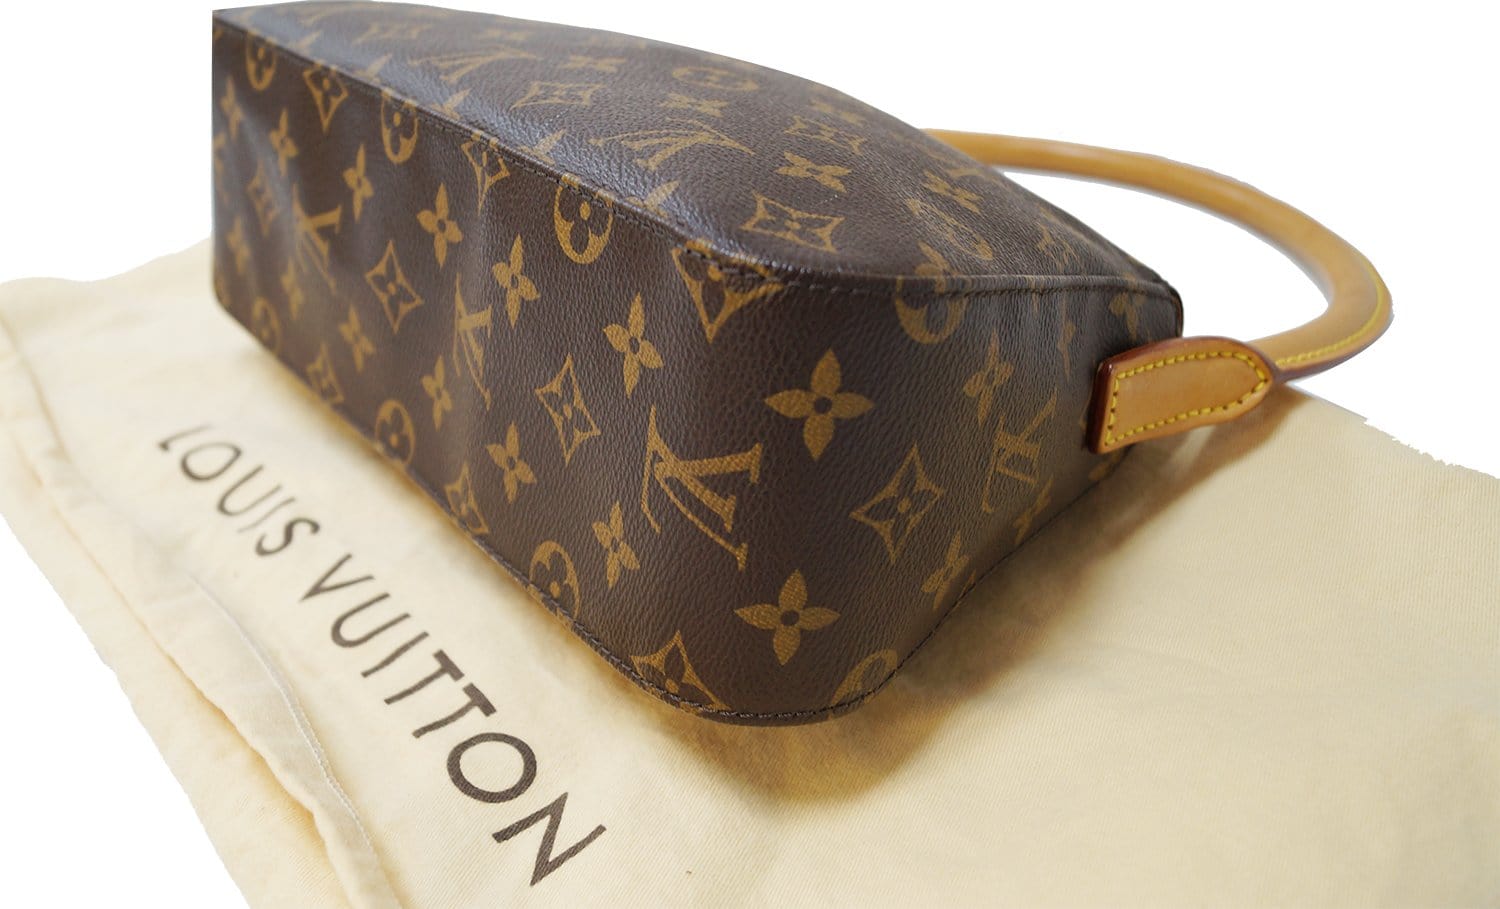 Louis Vuitton Looping Handbag 321659